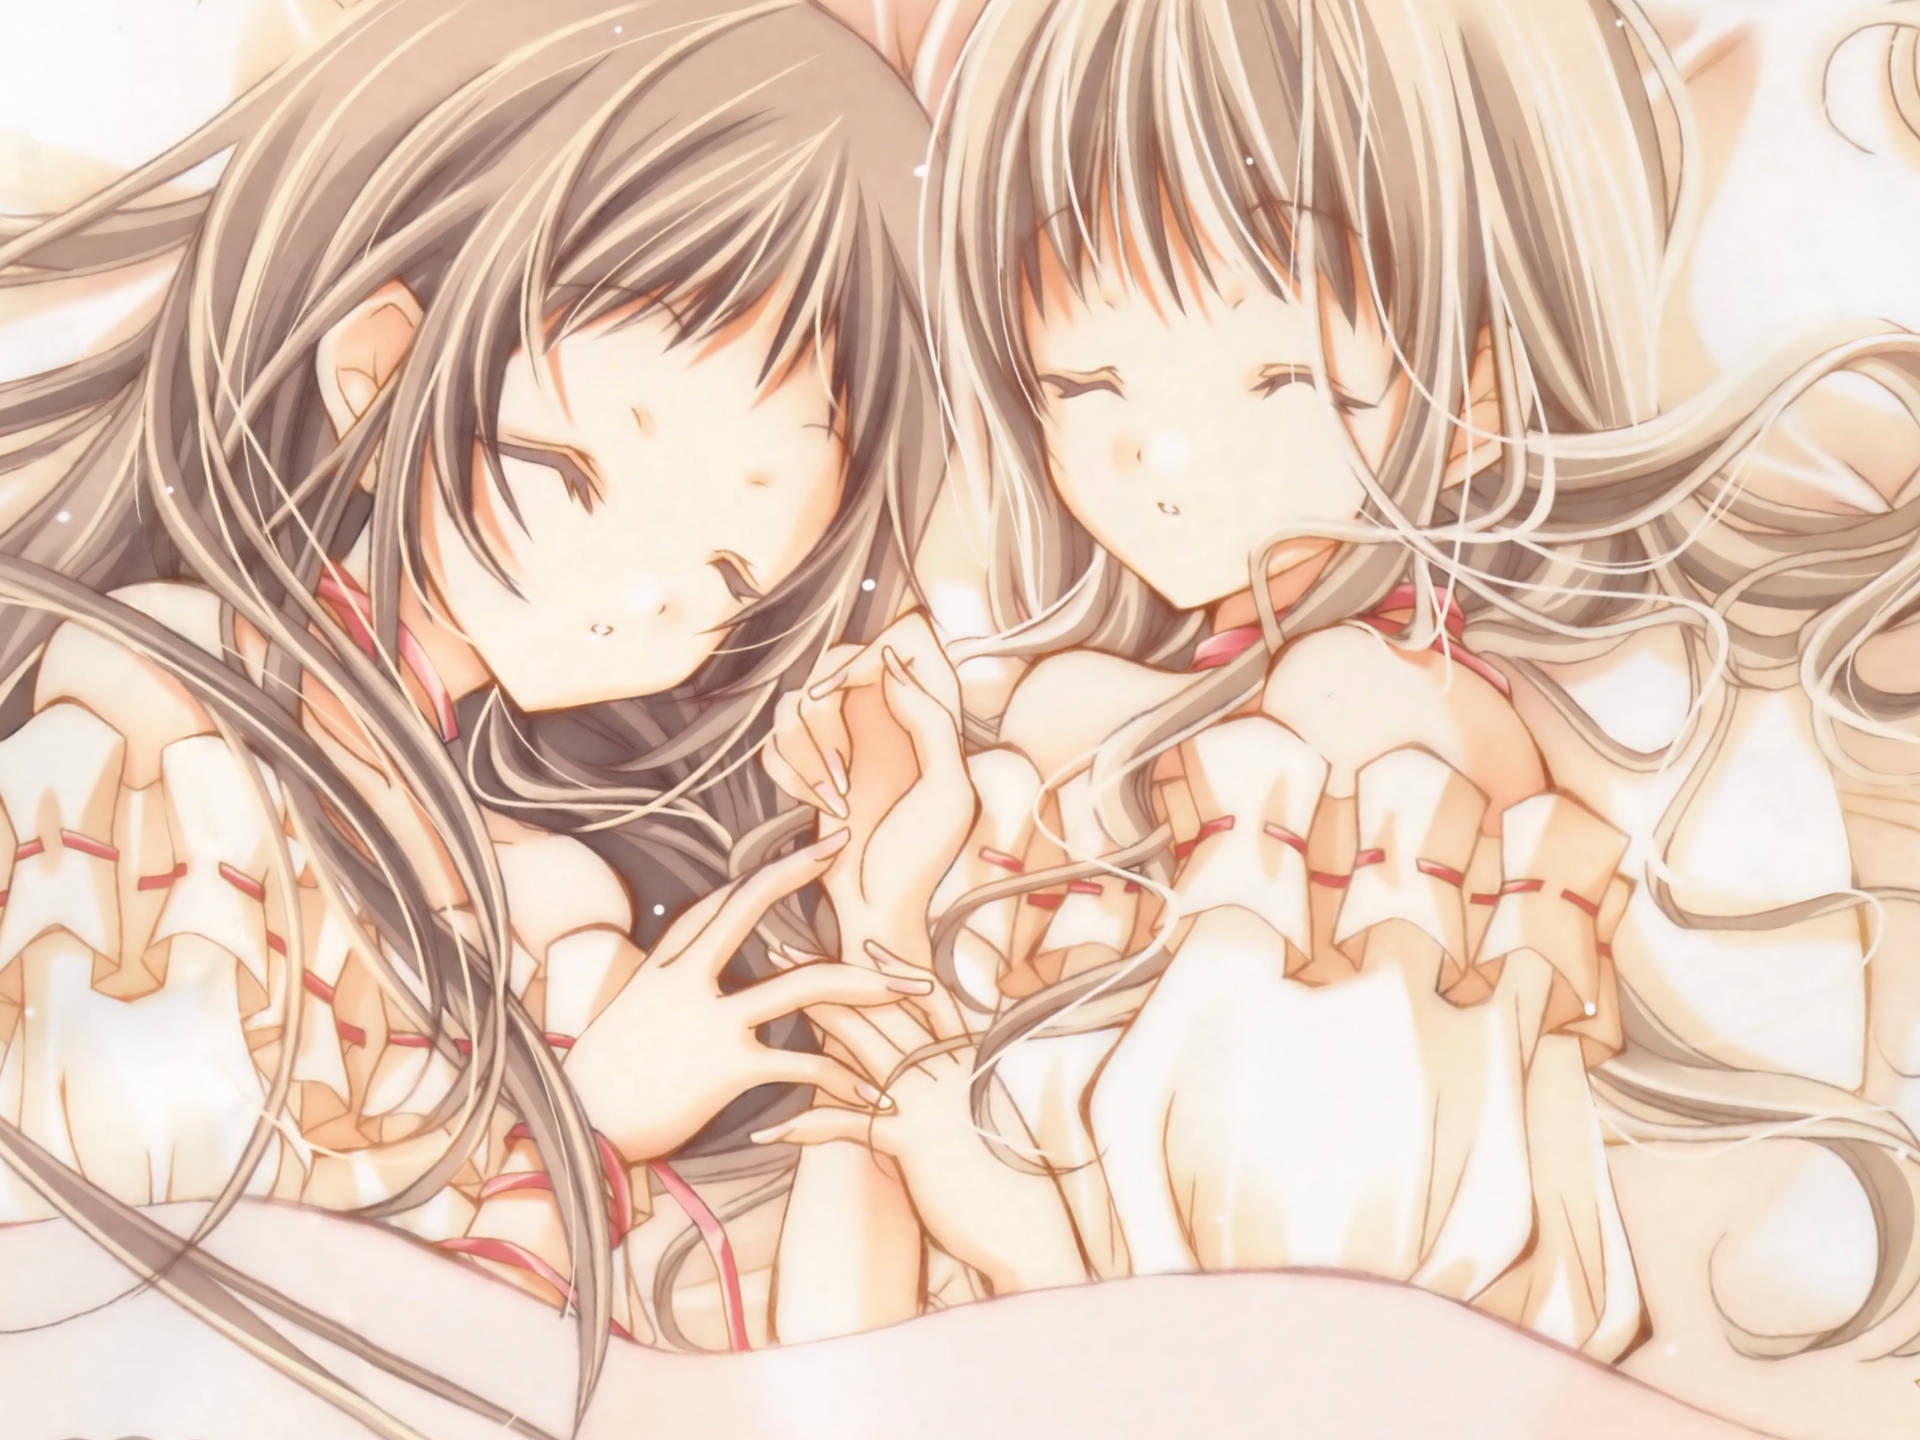 Anime Lesbian Maki And Hikari Background